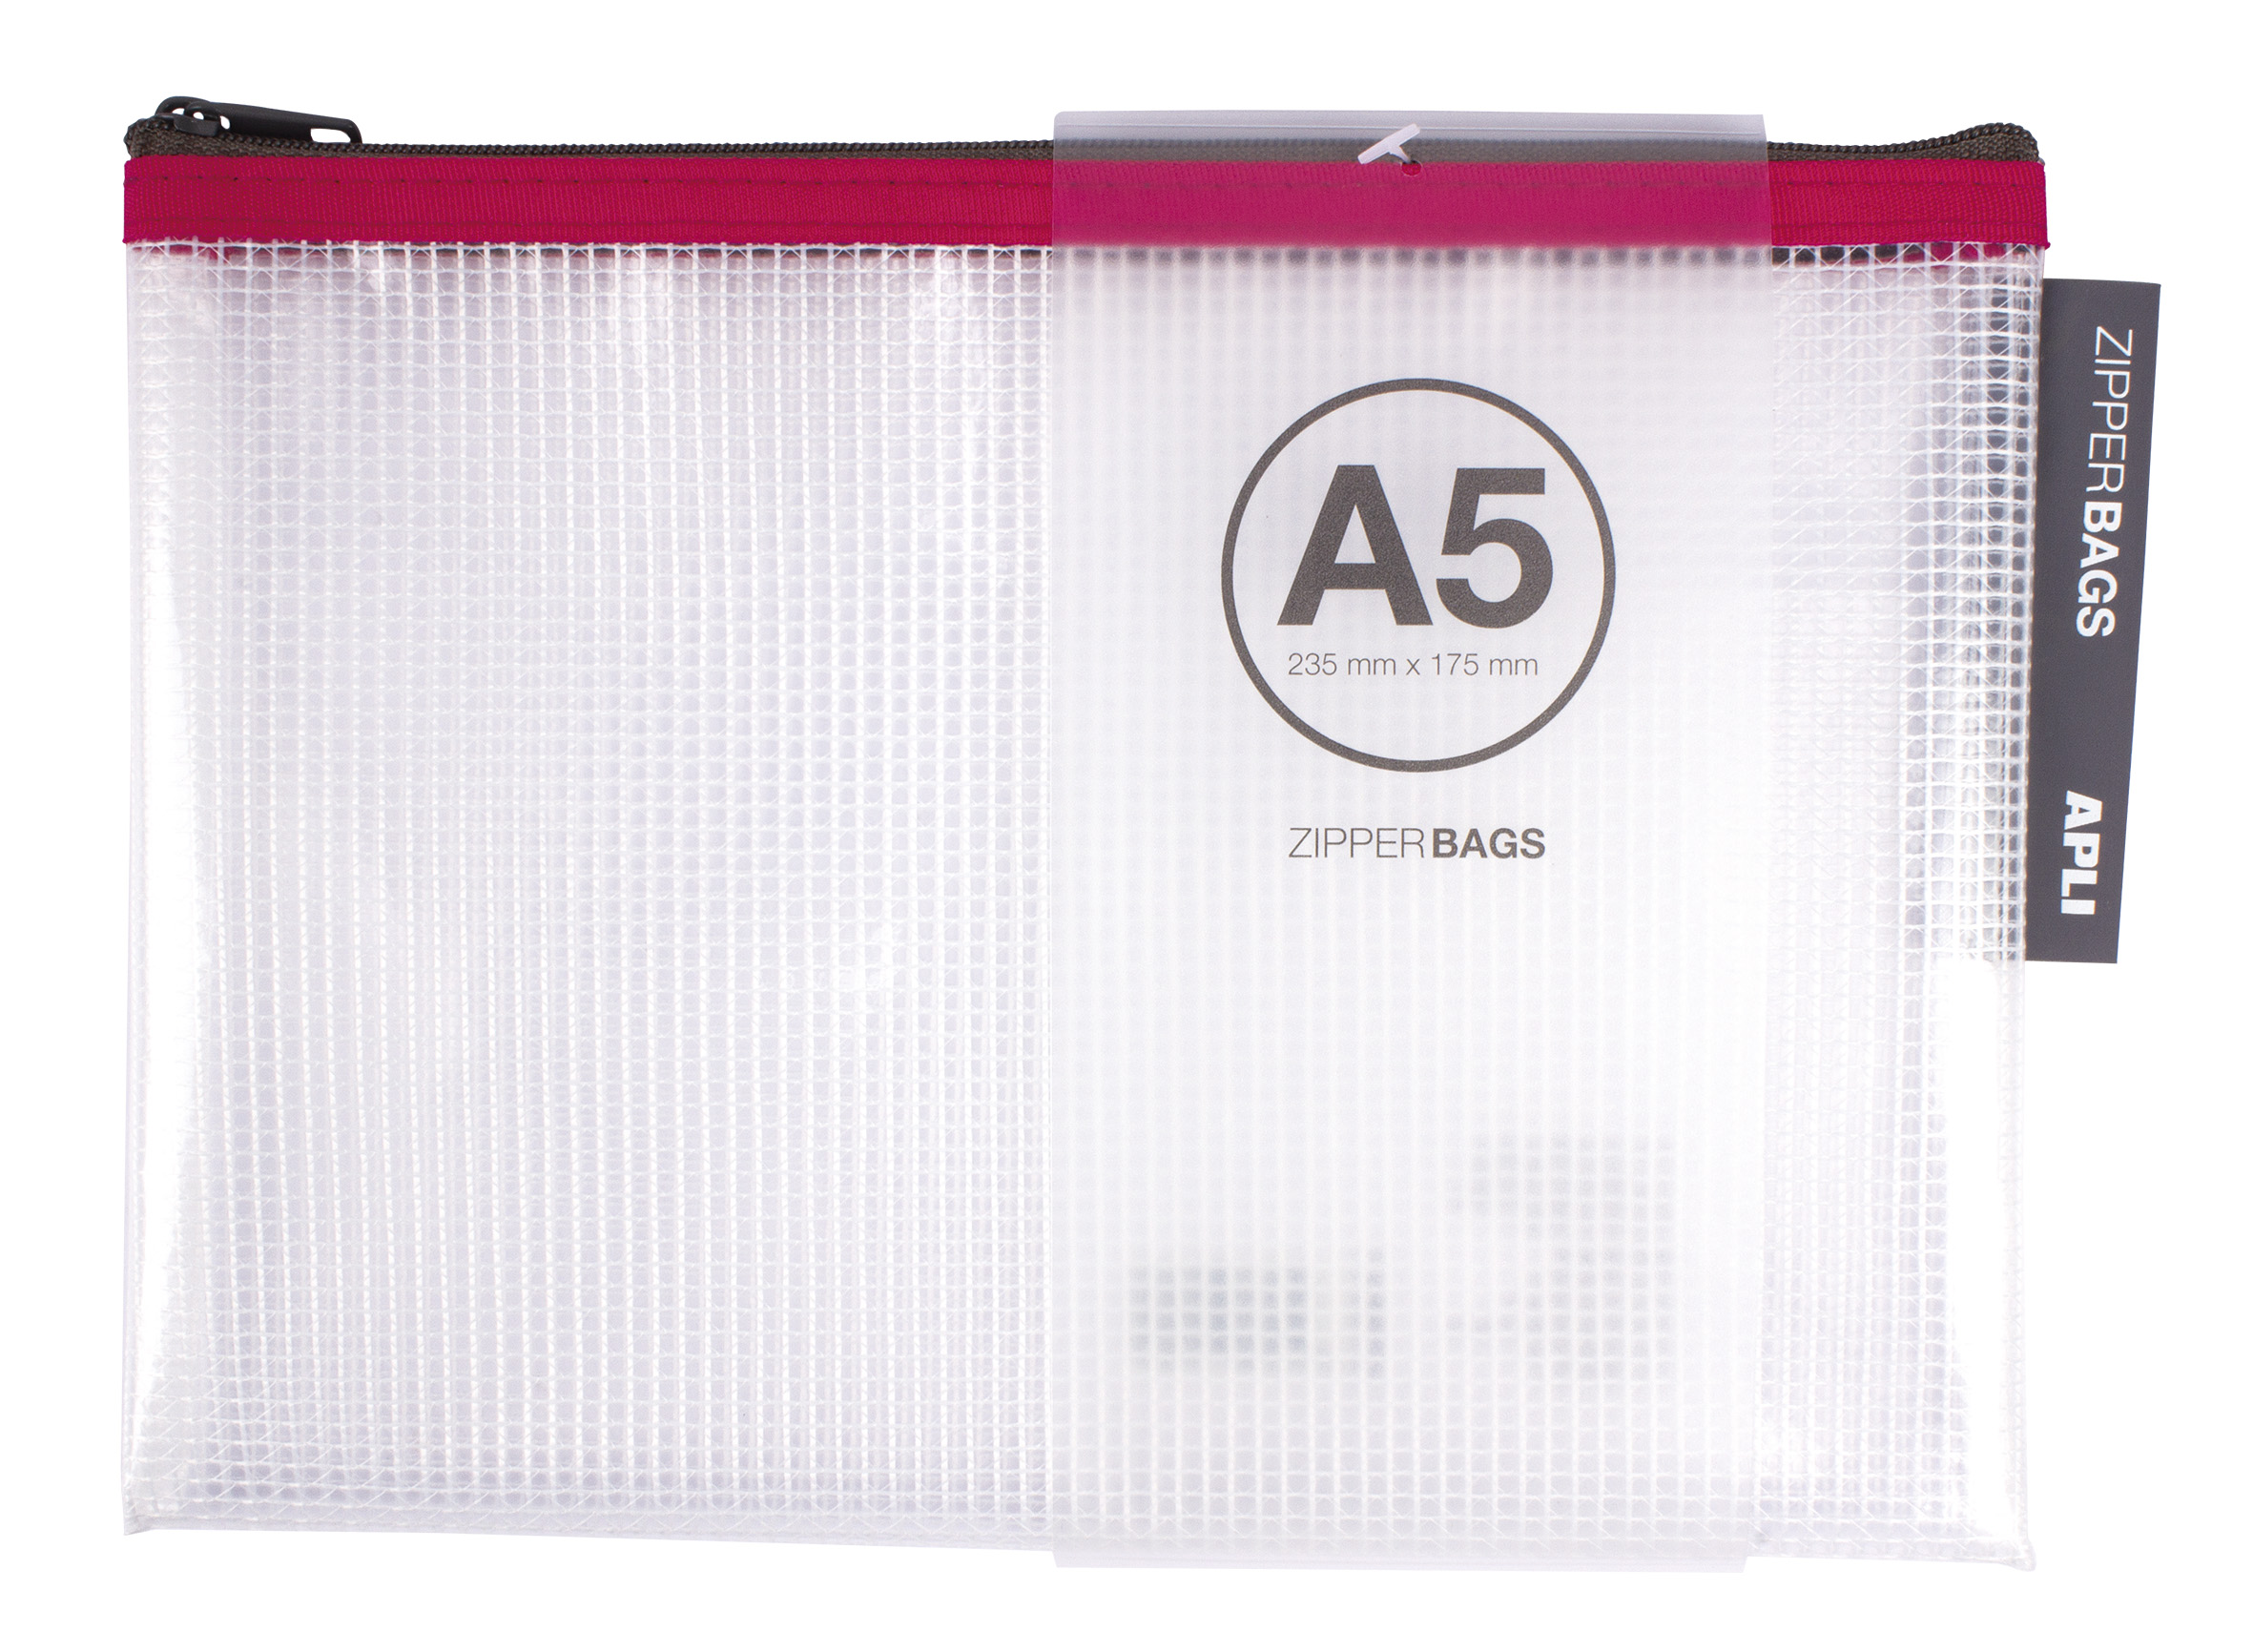 Enveloppes Apli Transparentes Eva Porta-Todo - Format A5 (235x175mm) - Souples, Résistantes et Durables - Fermeture Zip - Paquet de 20 Unités en 5 Couleurs Assorties